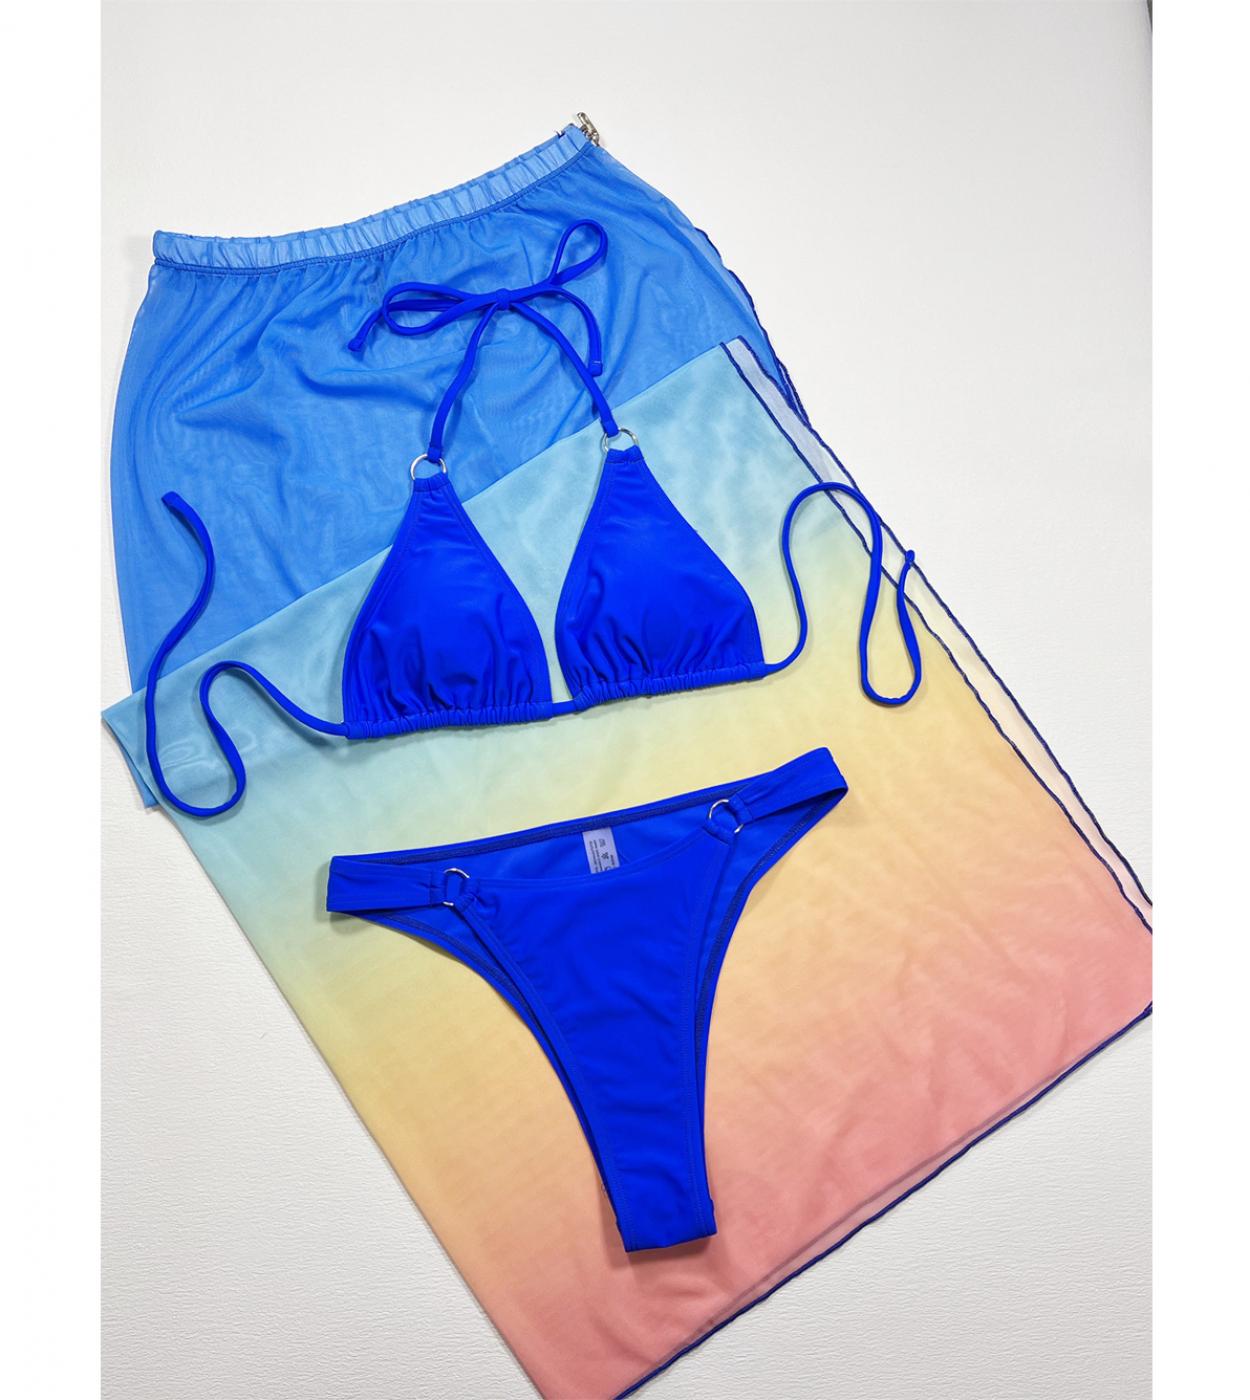 Blue Cover Ups 3 Piece Bikini Gradient Slit Skirt Swimsuit Women Swimwear V Neck Suspender Bathing Suit Backless Biquini